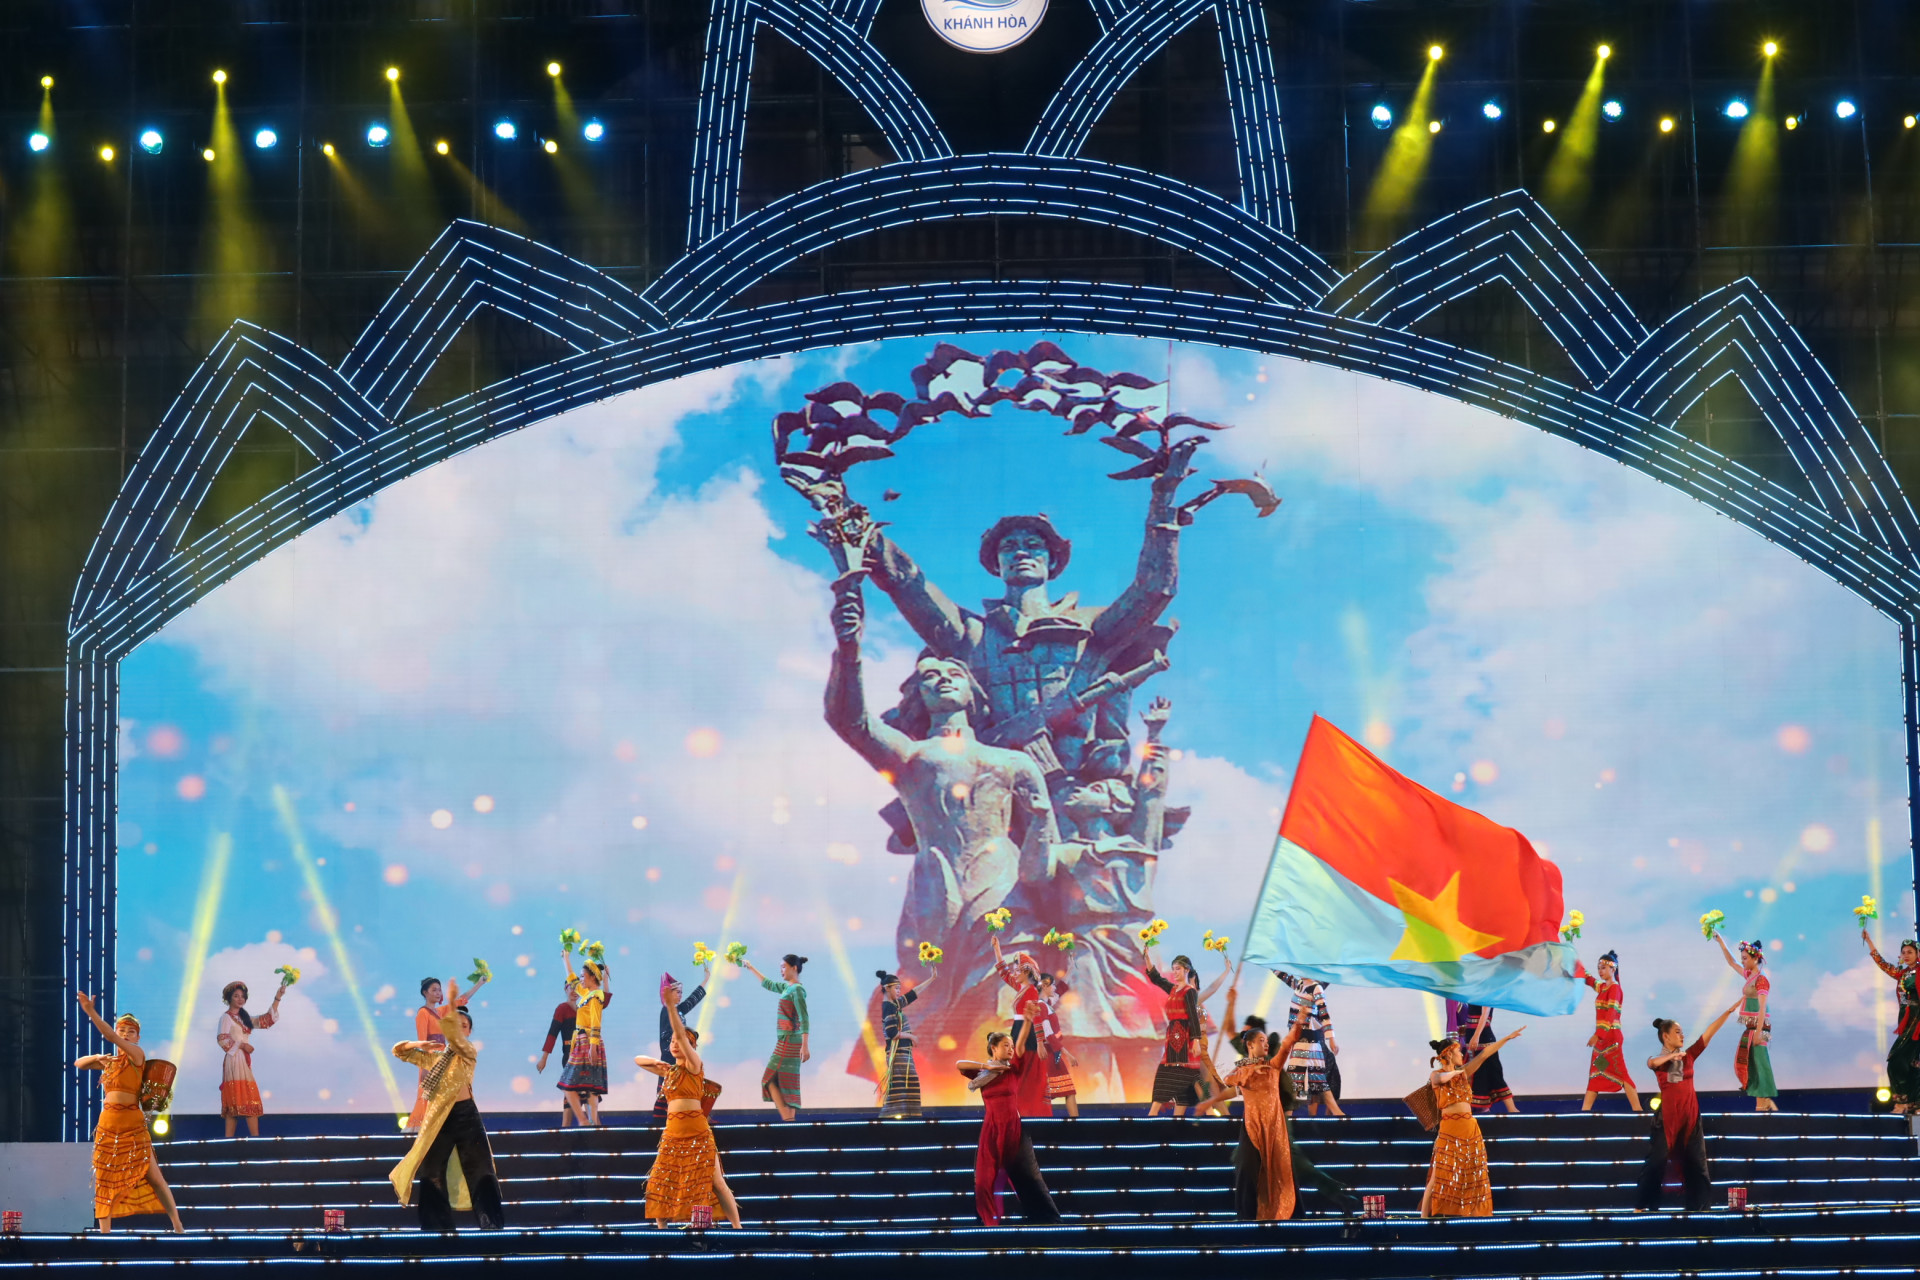 Tiết mục Hát mừng Nha Trang giải phóng, do các nghệ sĩ Đoàn ca múa nhạc Hải Đăng biểu diễn trong dịp kỷ niệm 48 năm ngày giải phóng Nha Trang - Khánh Hòa.